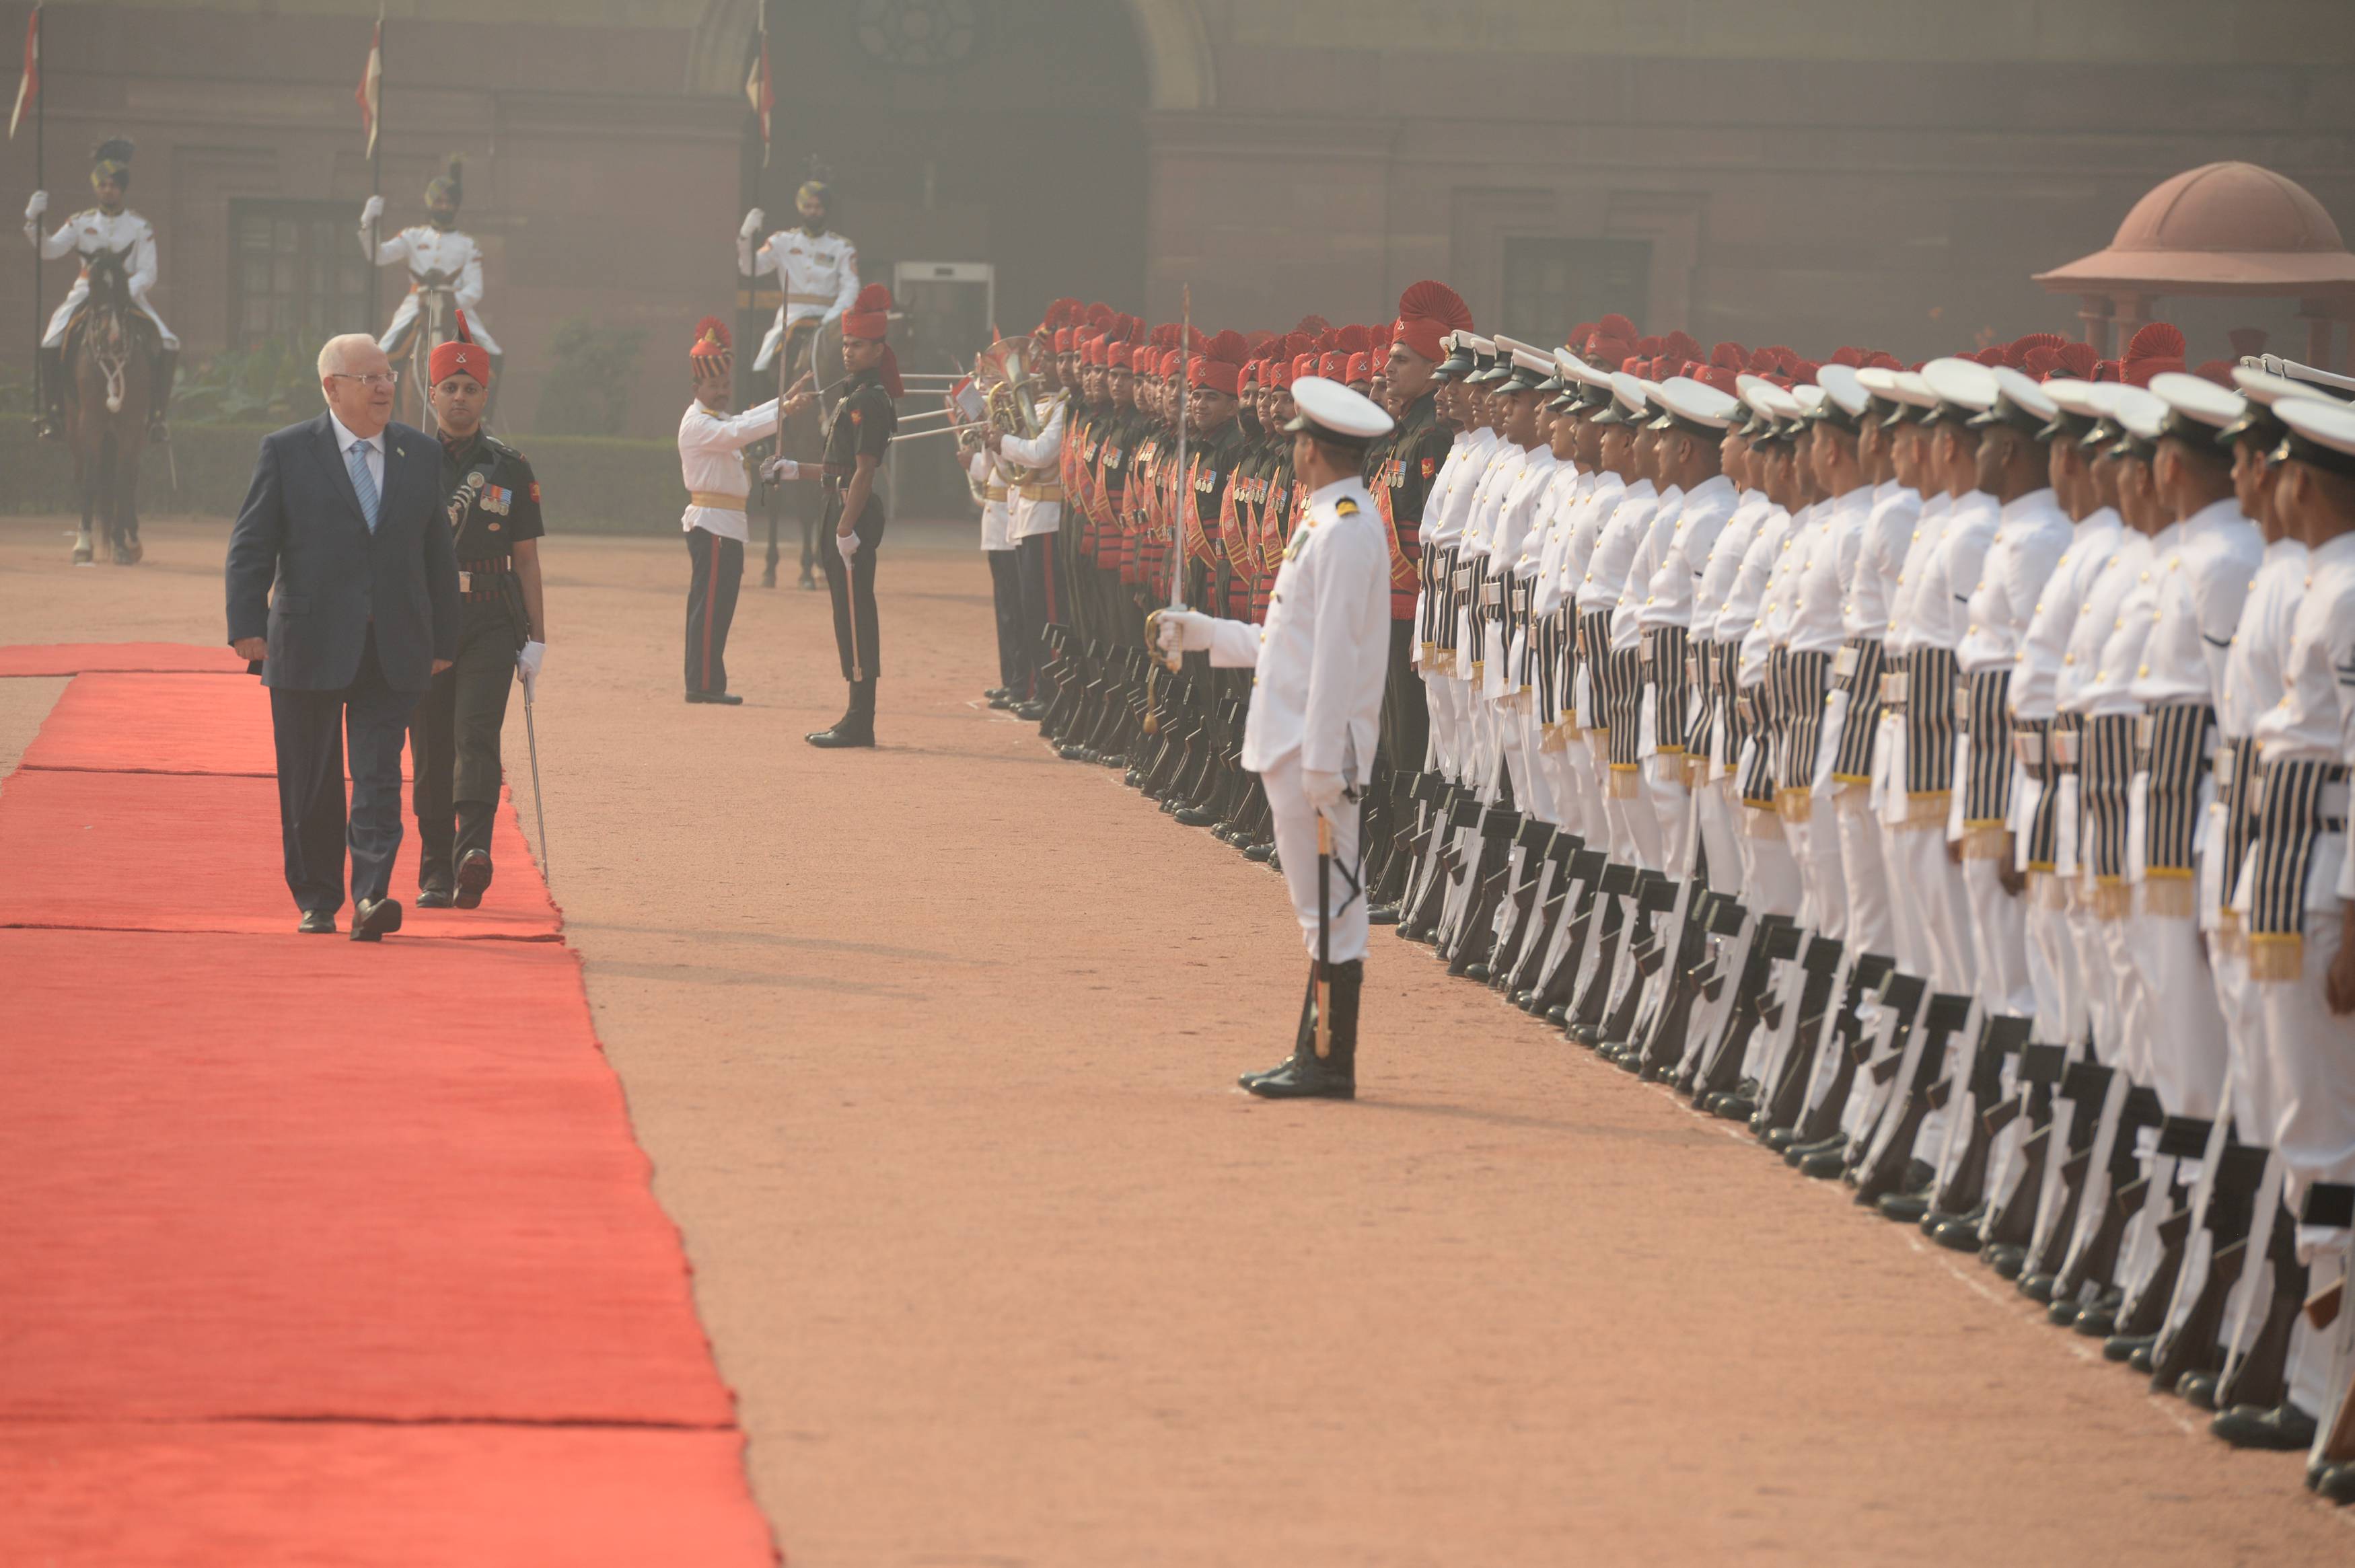 נשיא המדינה בטקס קבלת הפנים בארמון הנשיא ההודי. צילום: מארק ניימן/לע"מ